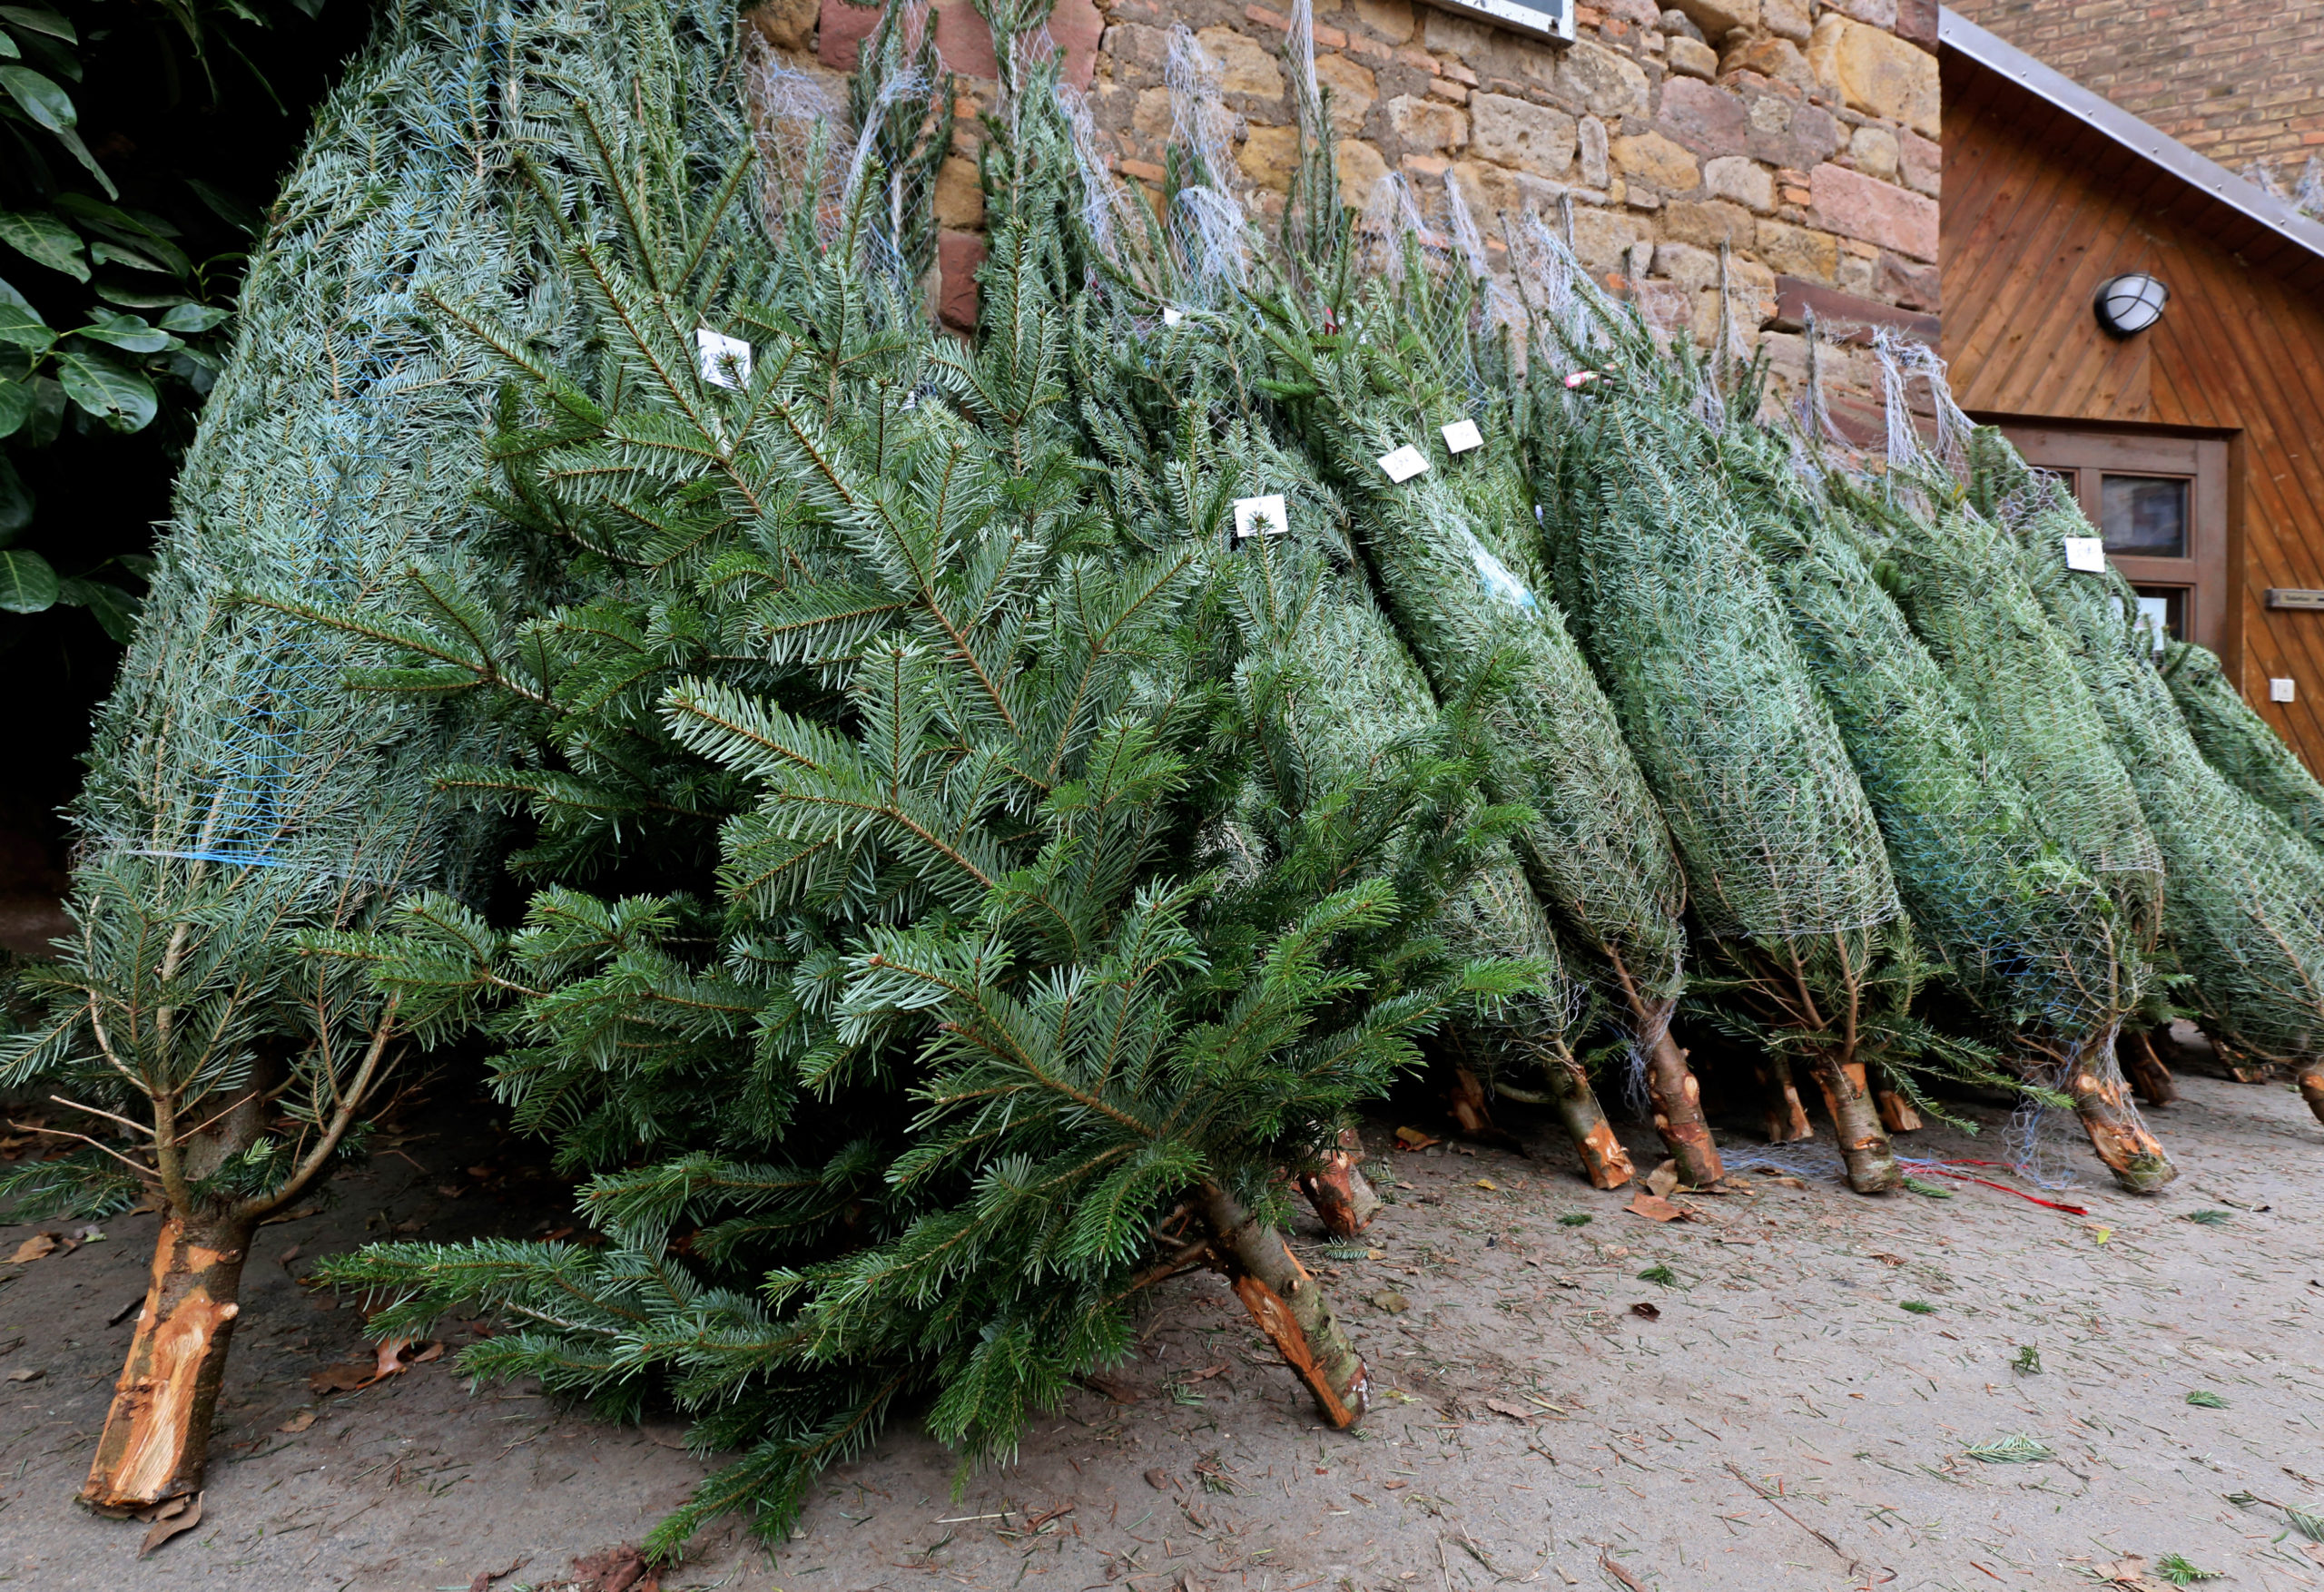 Bio-Weihnachtsbaum kaufen Beim Kauf eines ökologischen Weihnachtsbaums solltet ihr auf das ausgewiesene Bio-Siegel oder -Zertifikat achten.